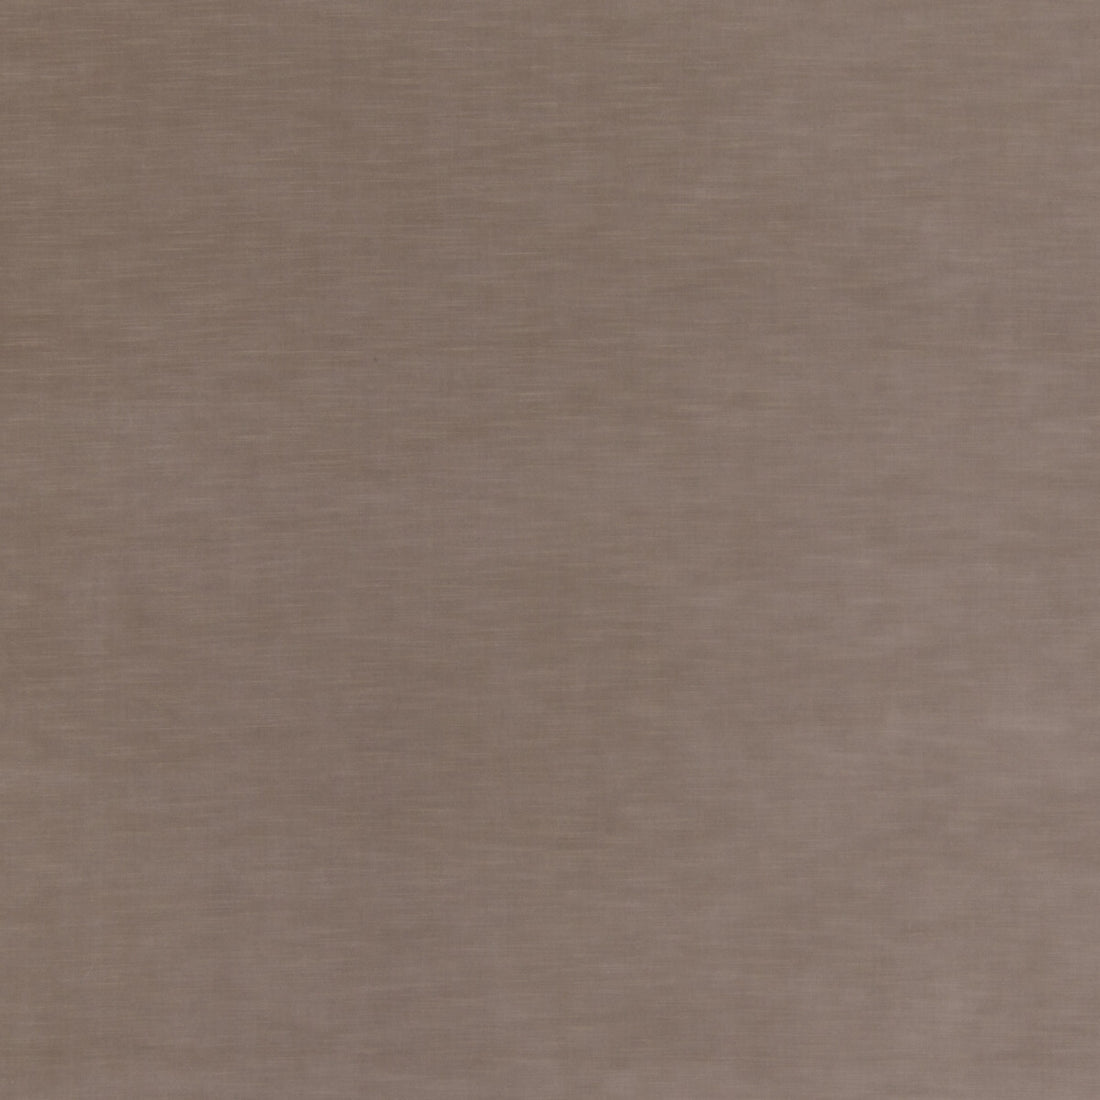 Quintessential Velvet fabric in mole color - pattern ED85359.240.0 - by Threads in the Quintessential Velvet collection